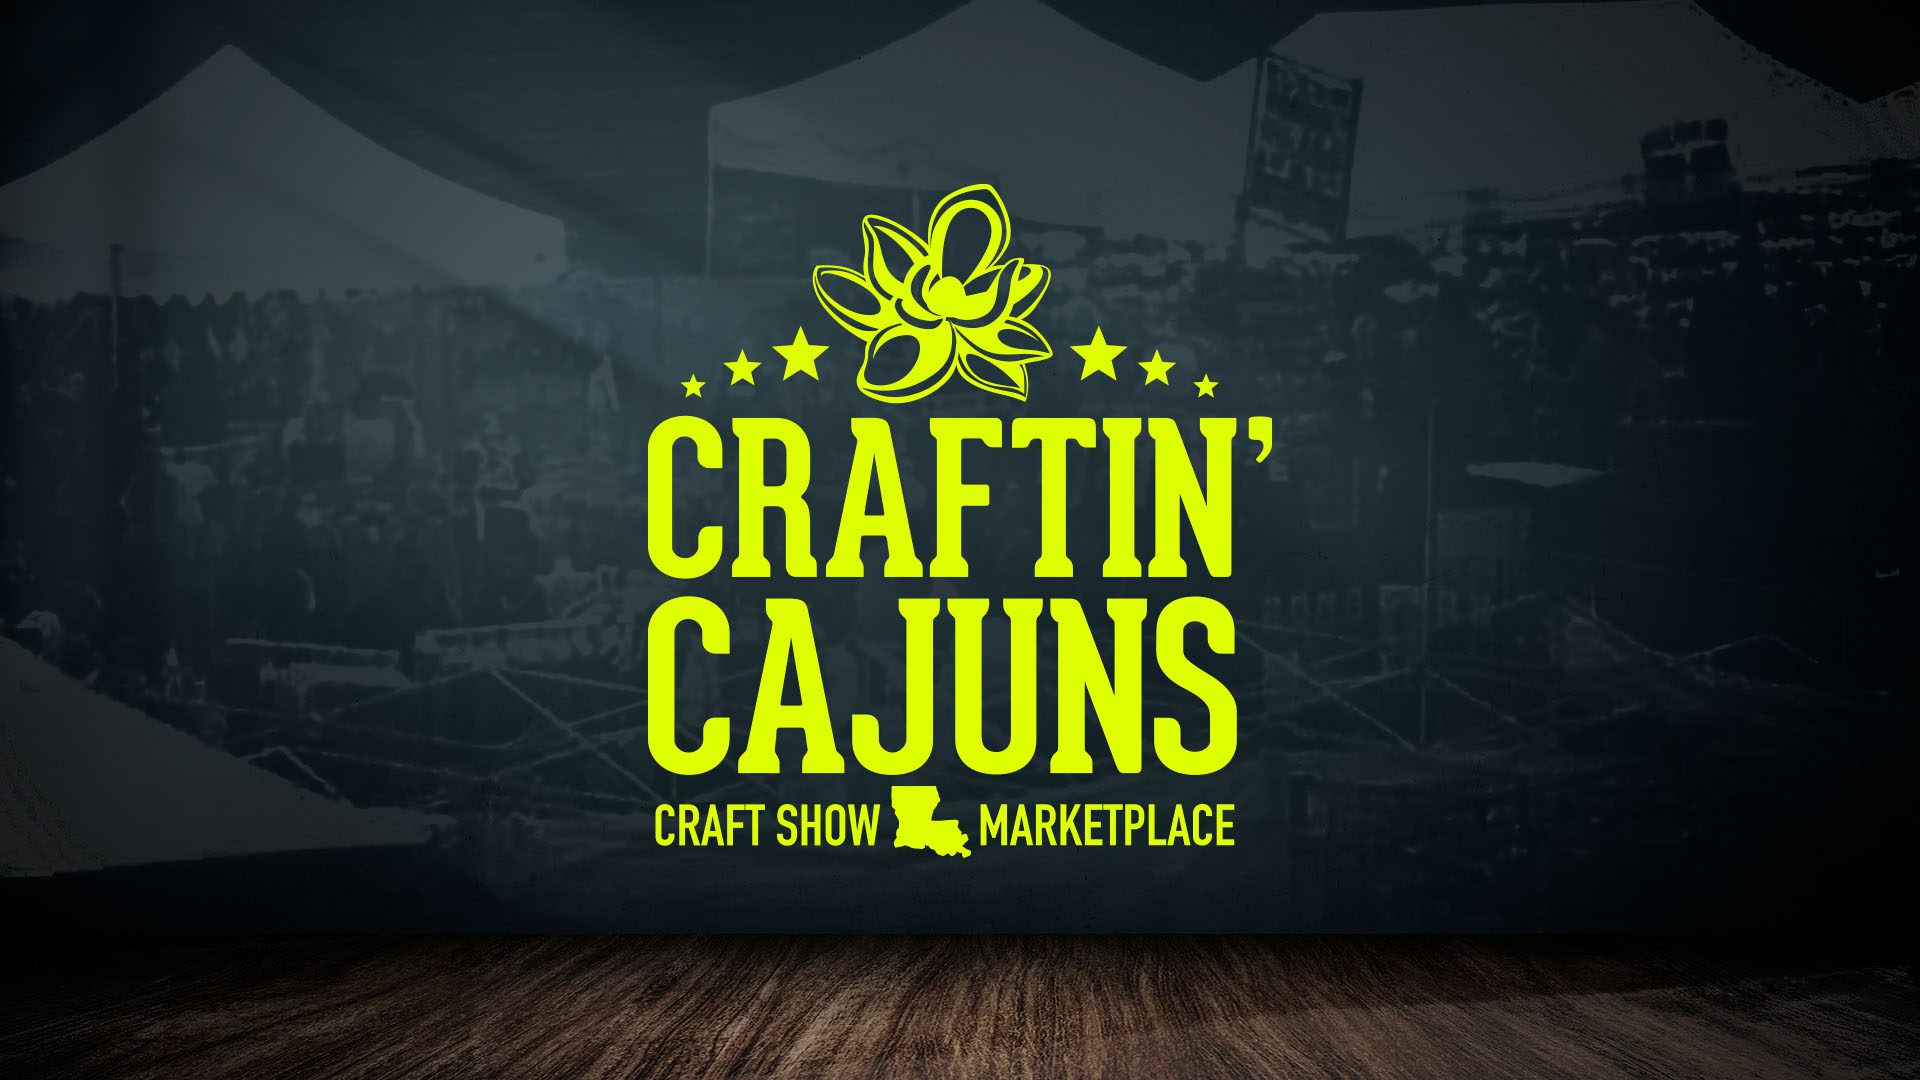 Craftin' Cajuns Craft Show and Marketplace